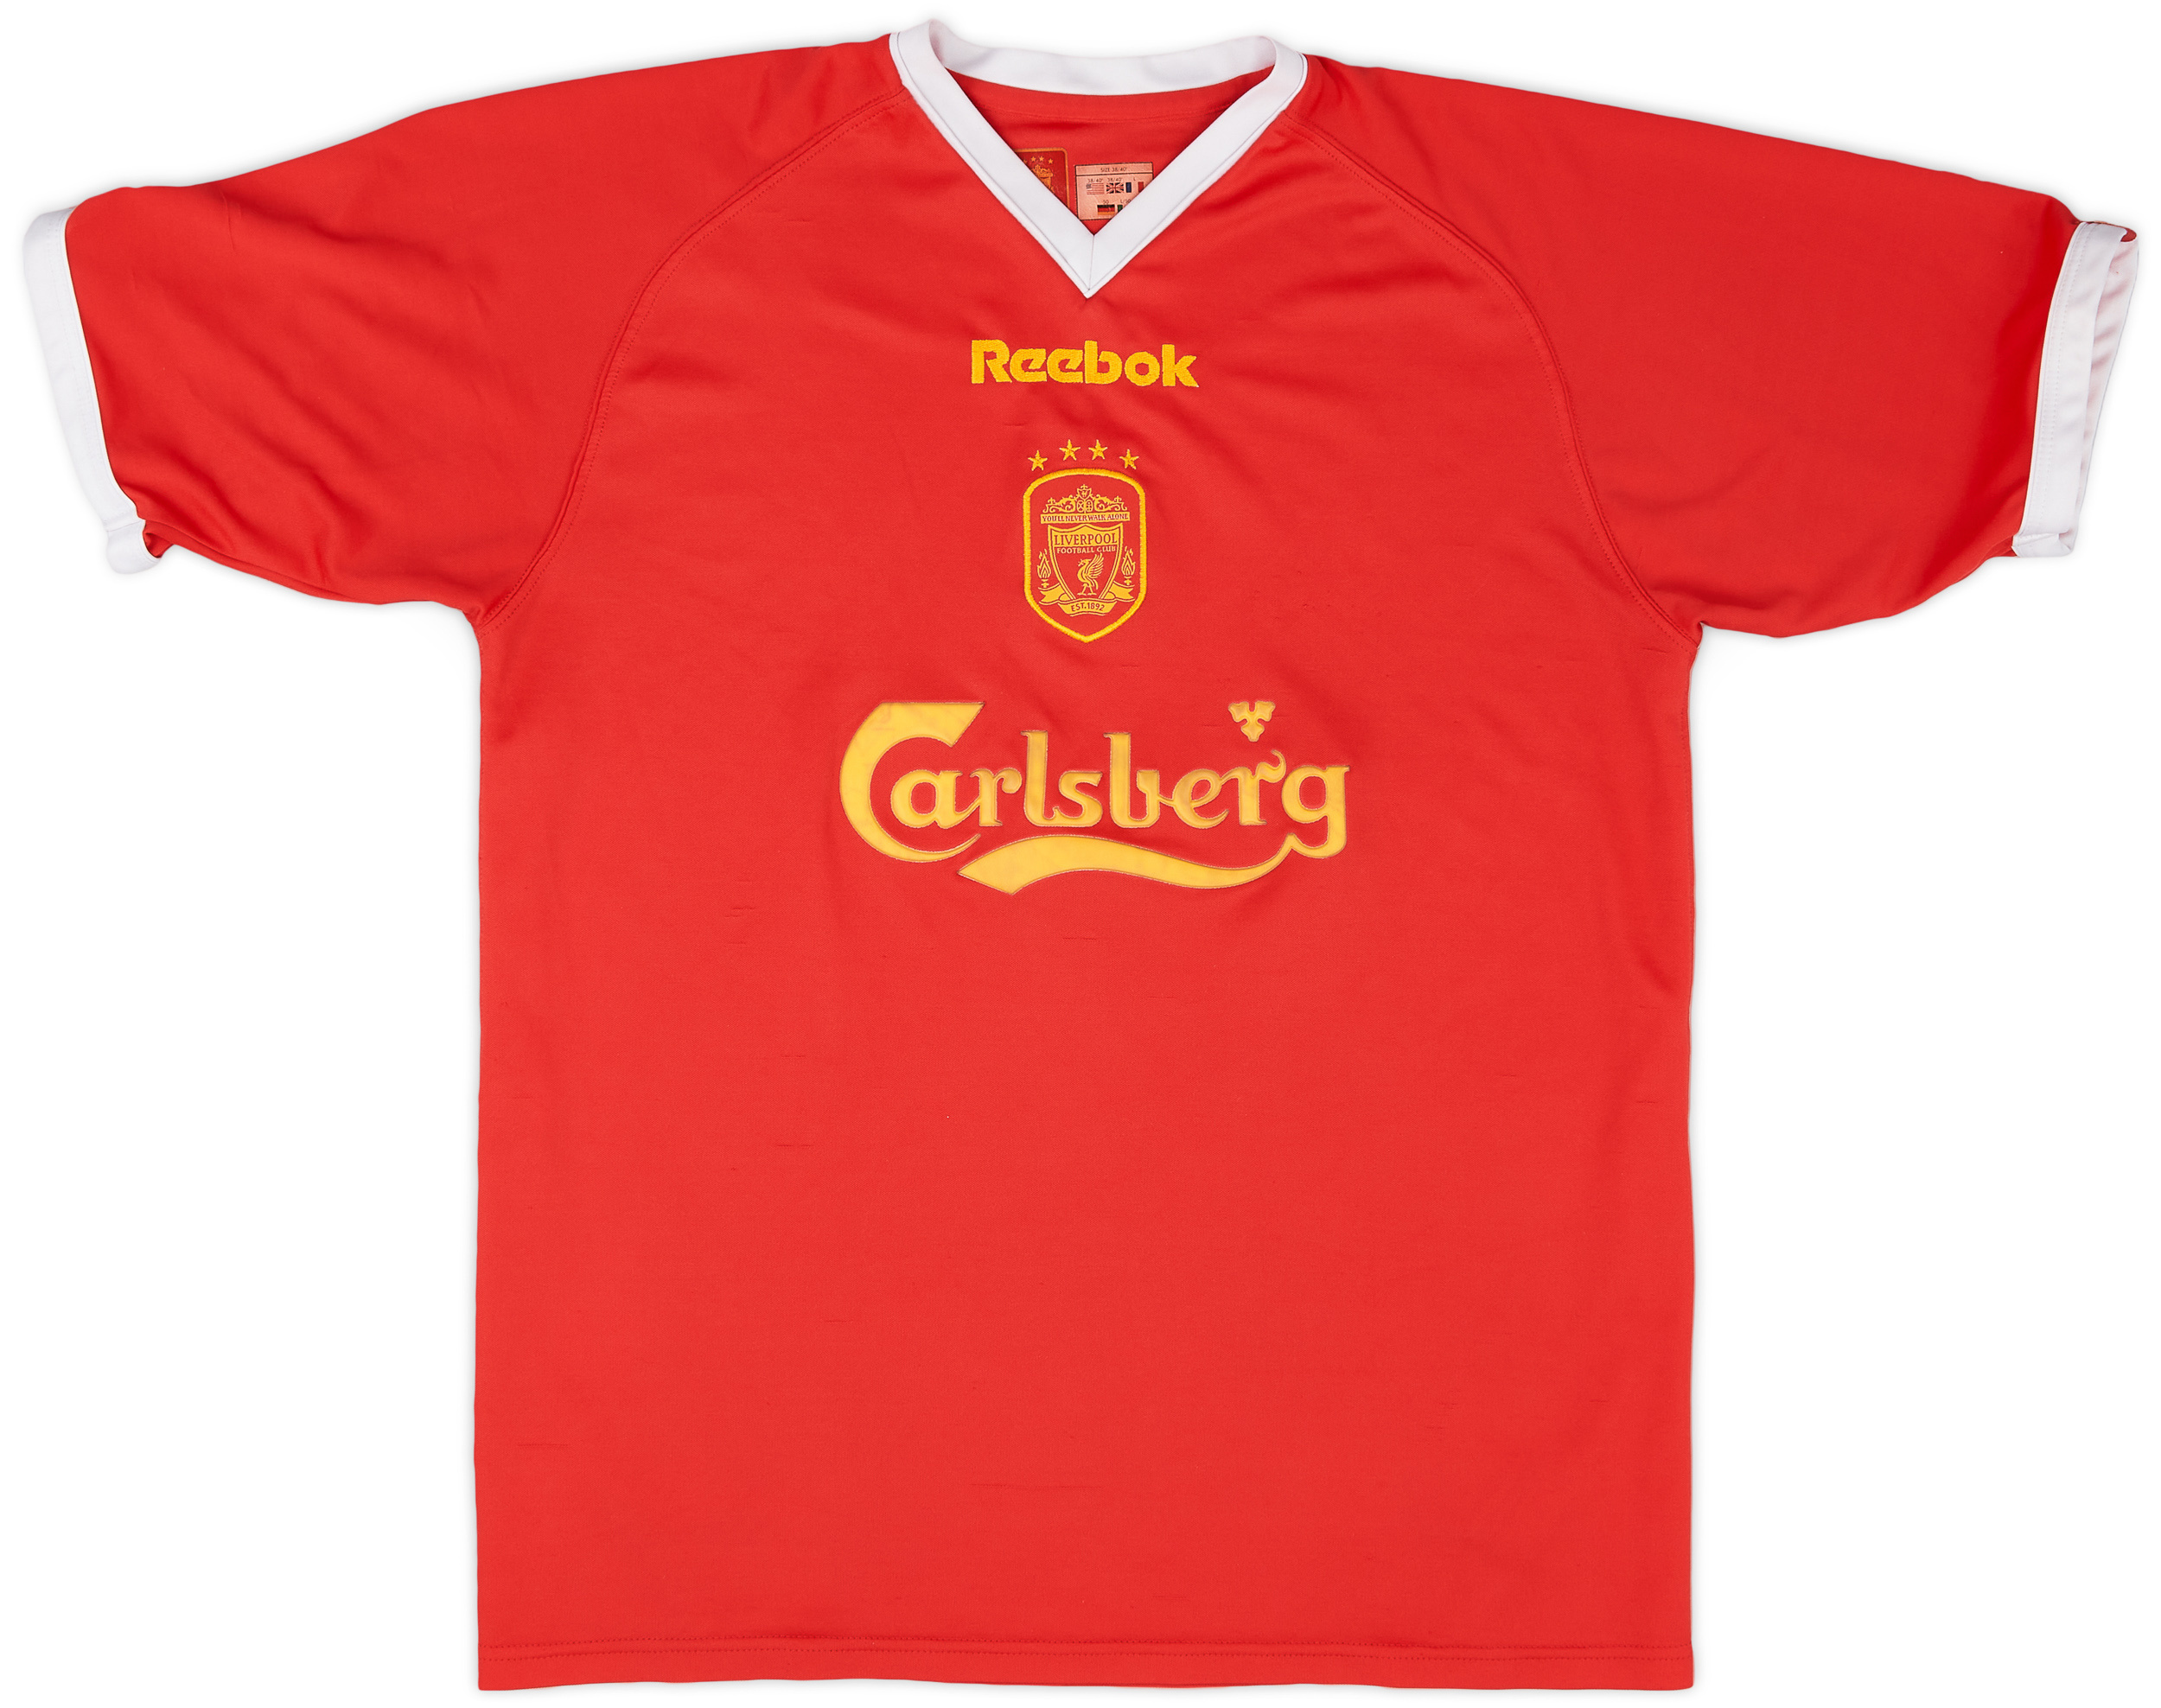 2001-03 Liverpool CL Shirt - 6/10 - ()